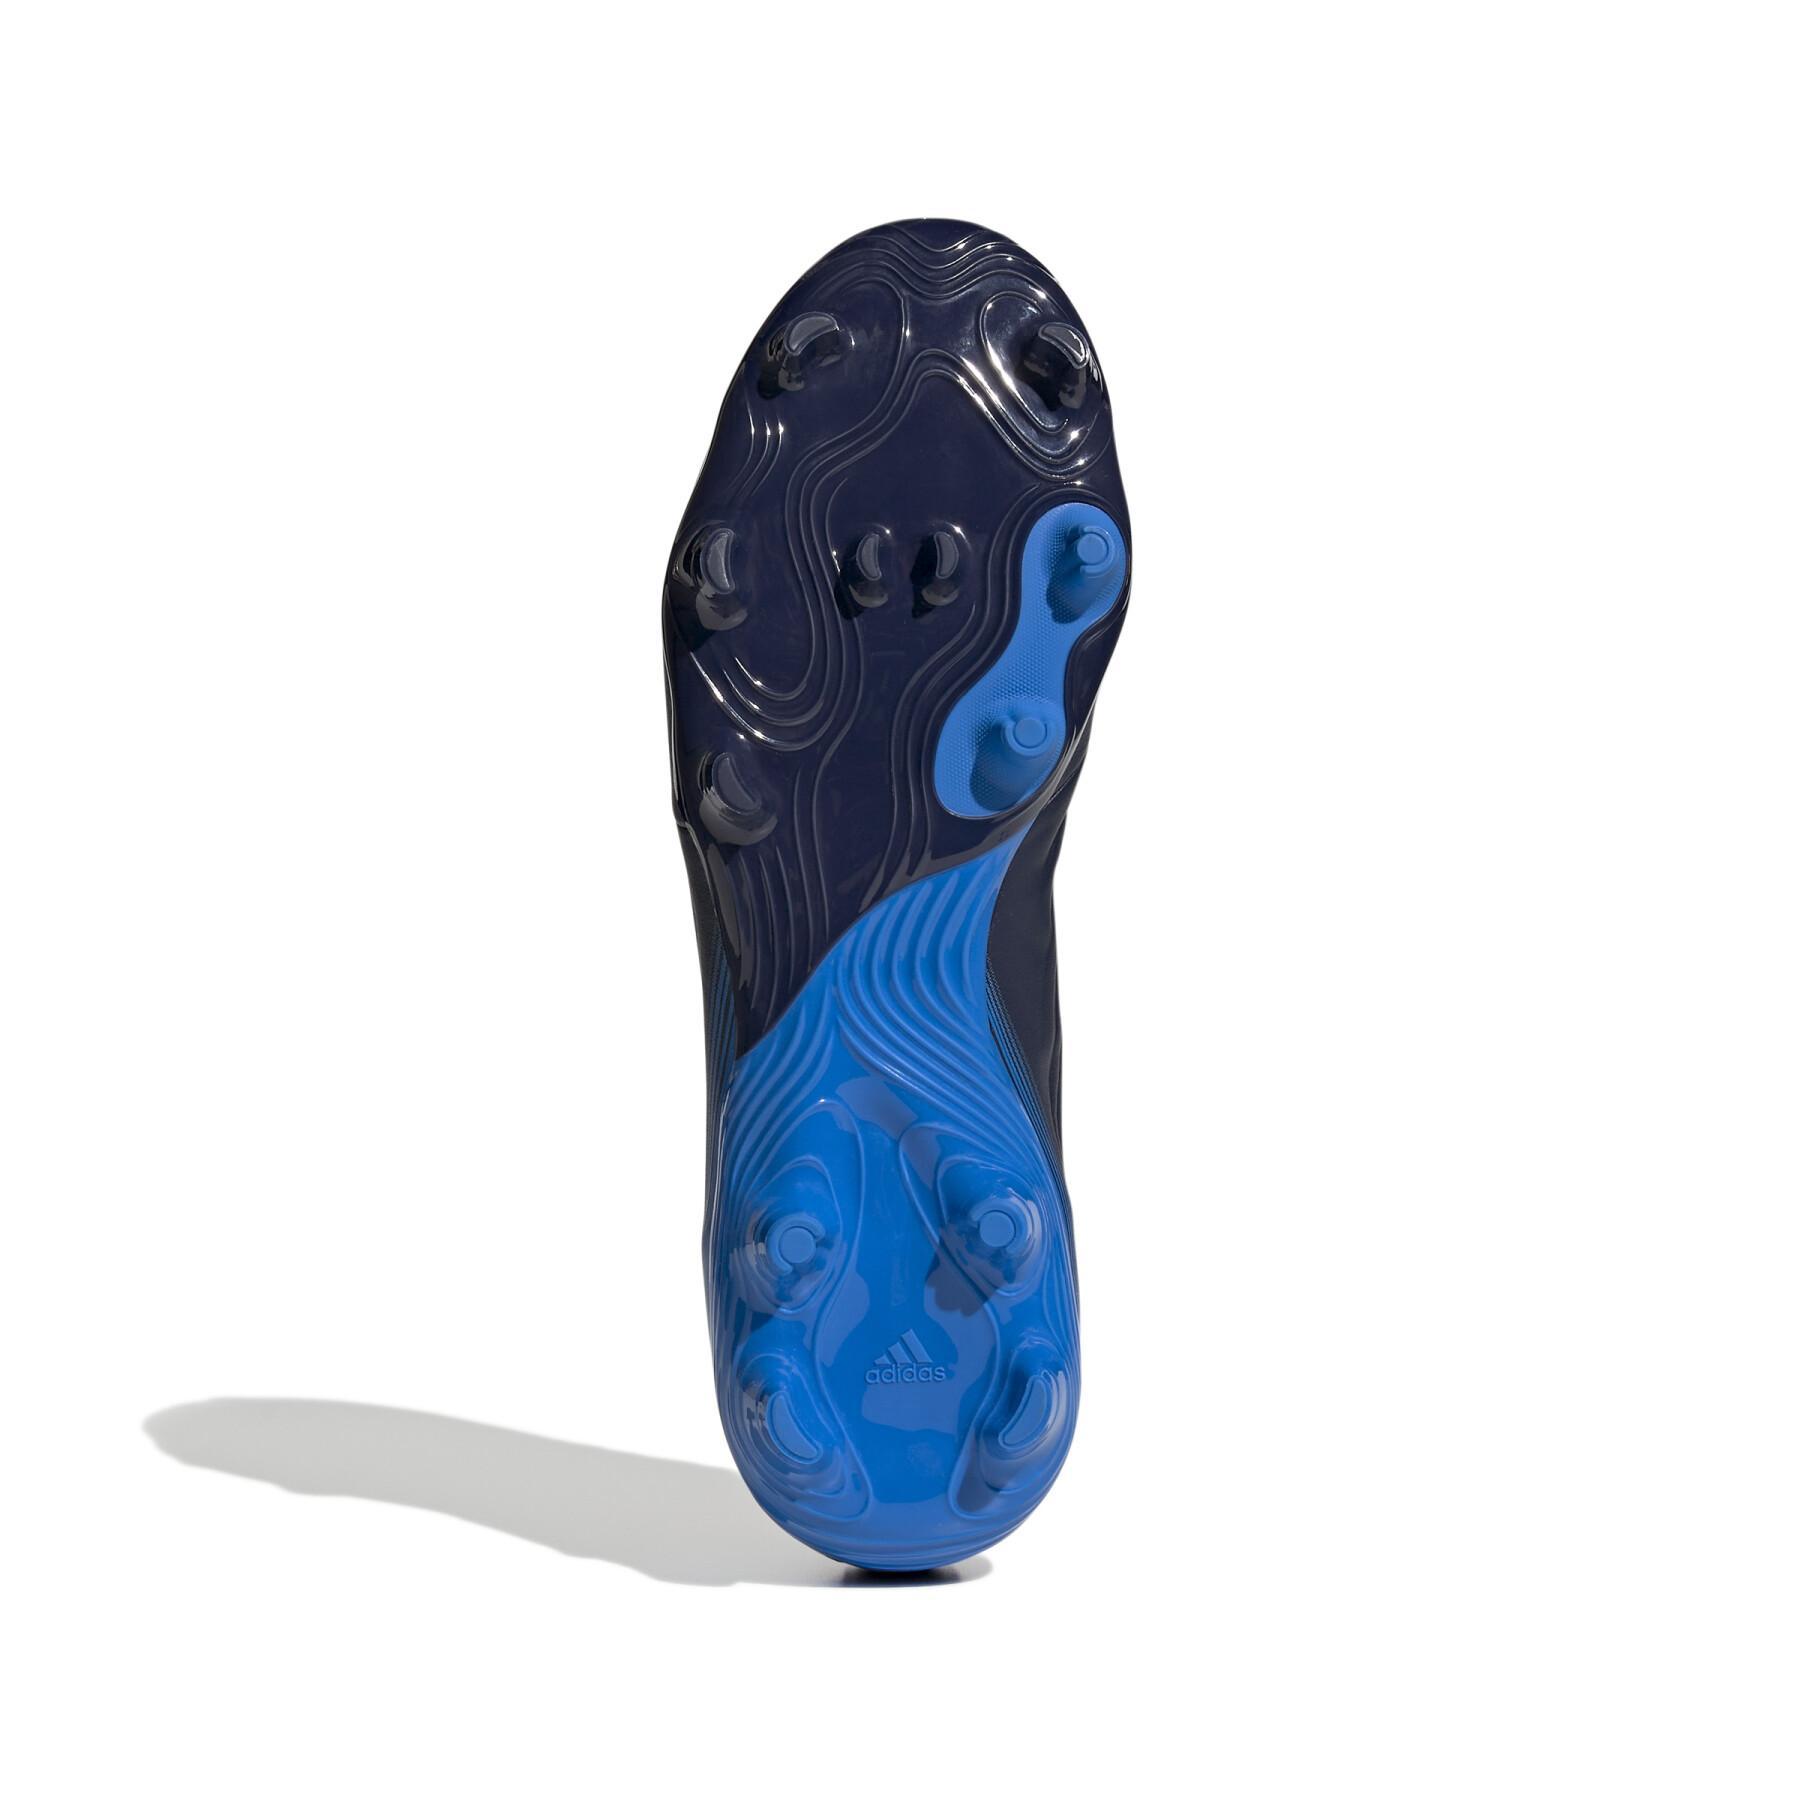 Soccer shoes adidas Copa Sense.3 FG - Sapphire Edge Pack